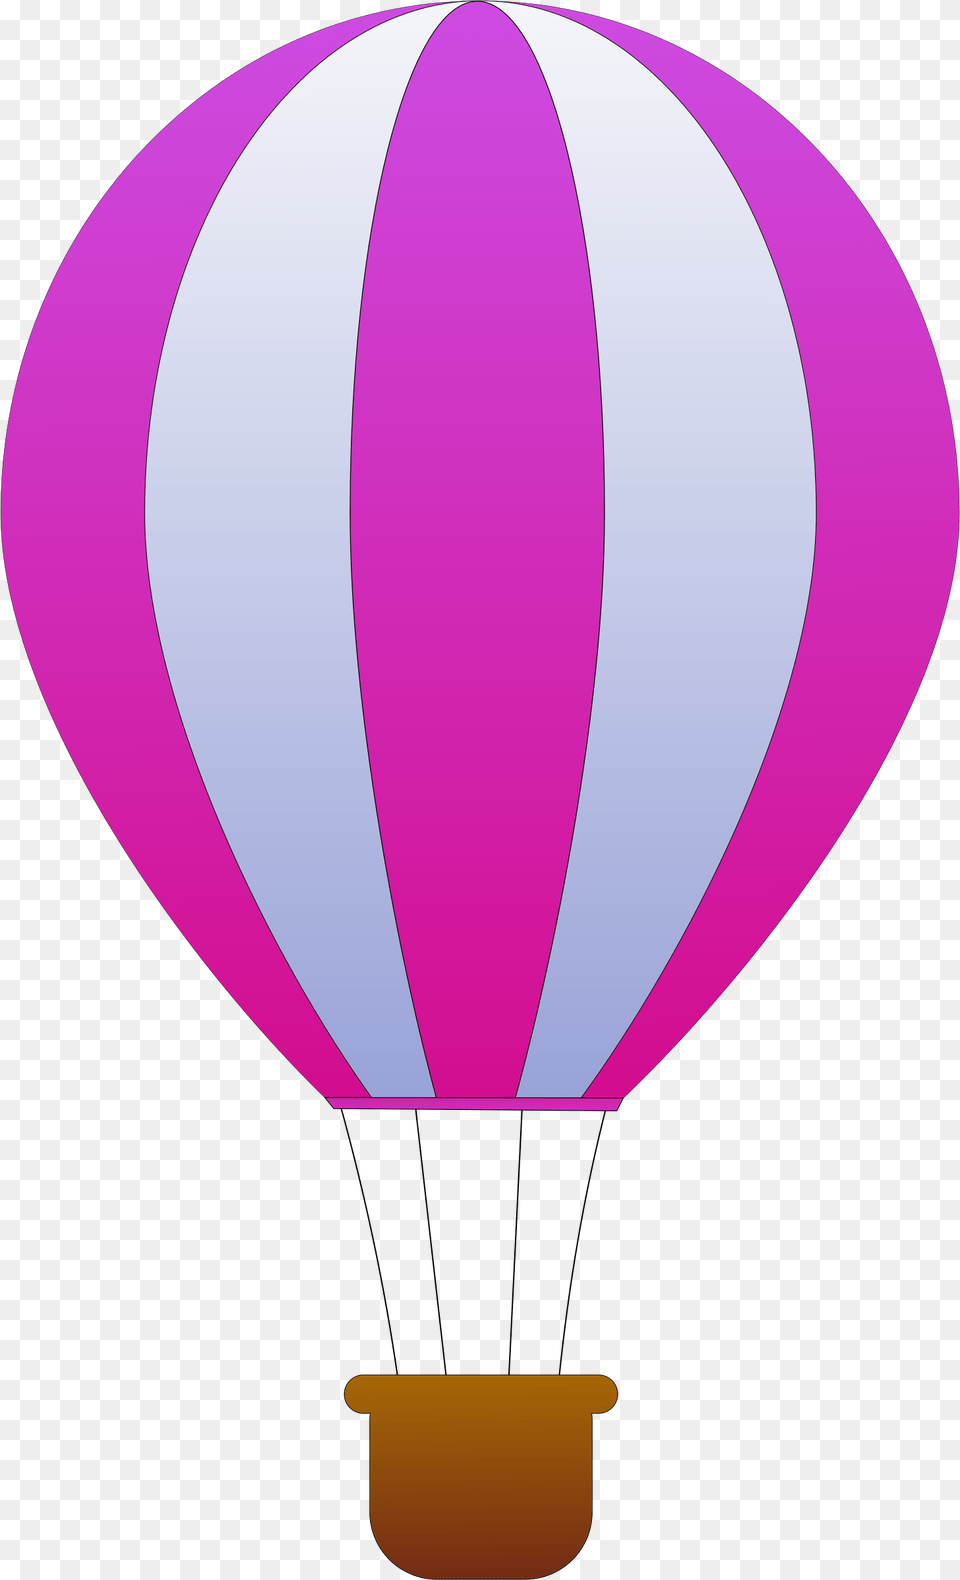 Air Balloon Image, Aircraft, Hot Air Balloon, Transportation, Vehicle Free Transparent Png